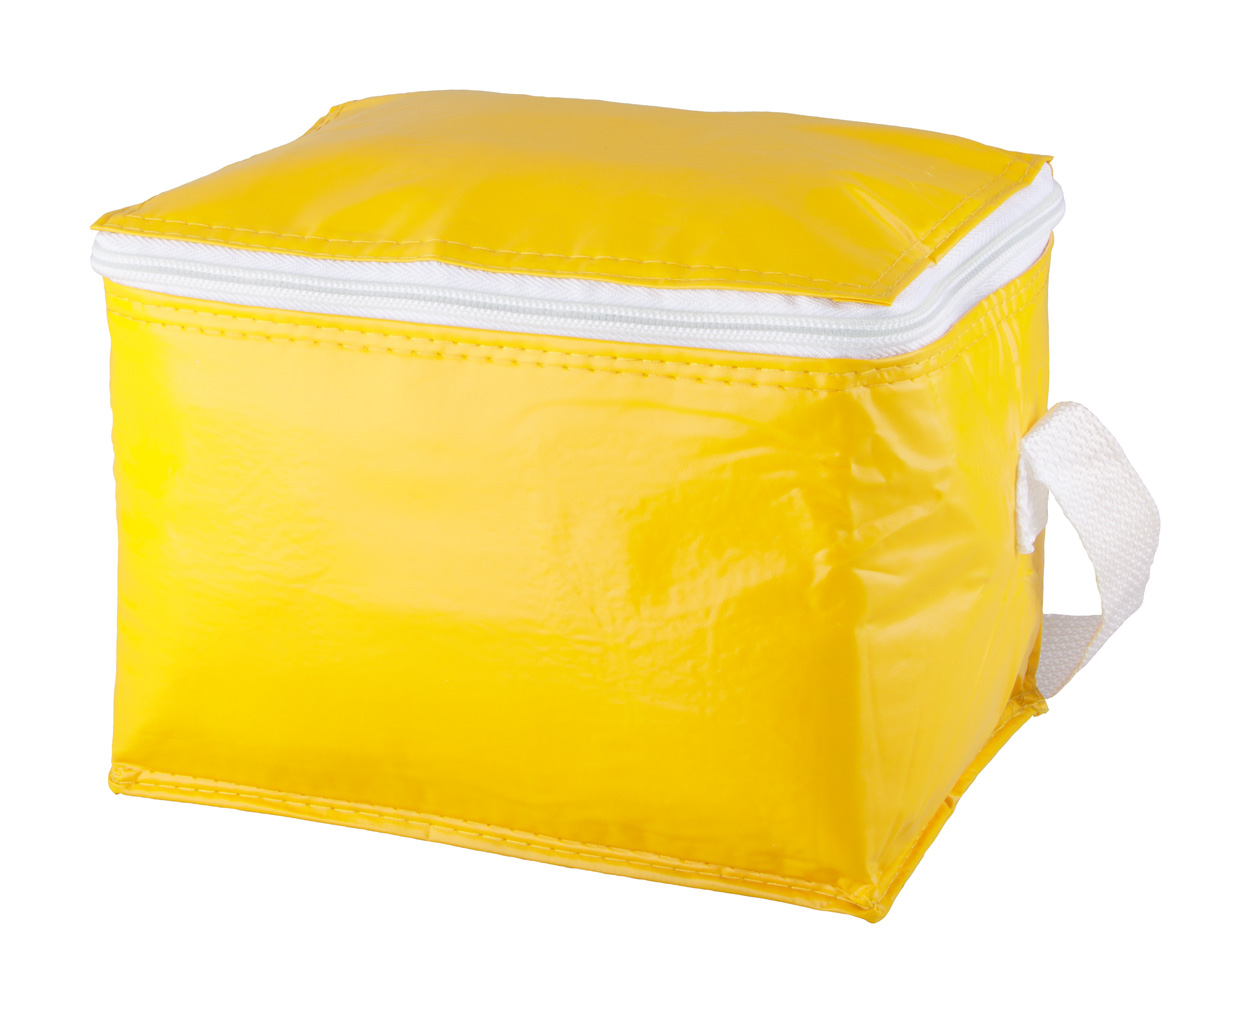 Promo  Coolcan prenosivi hladnjak, žute boje